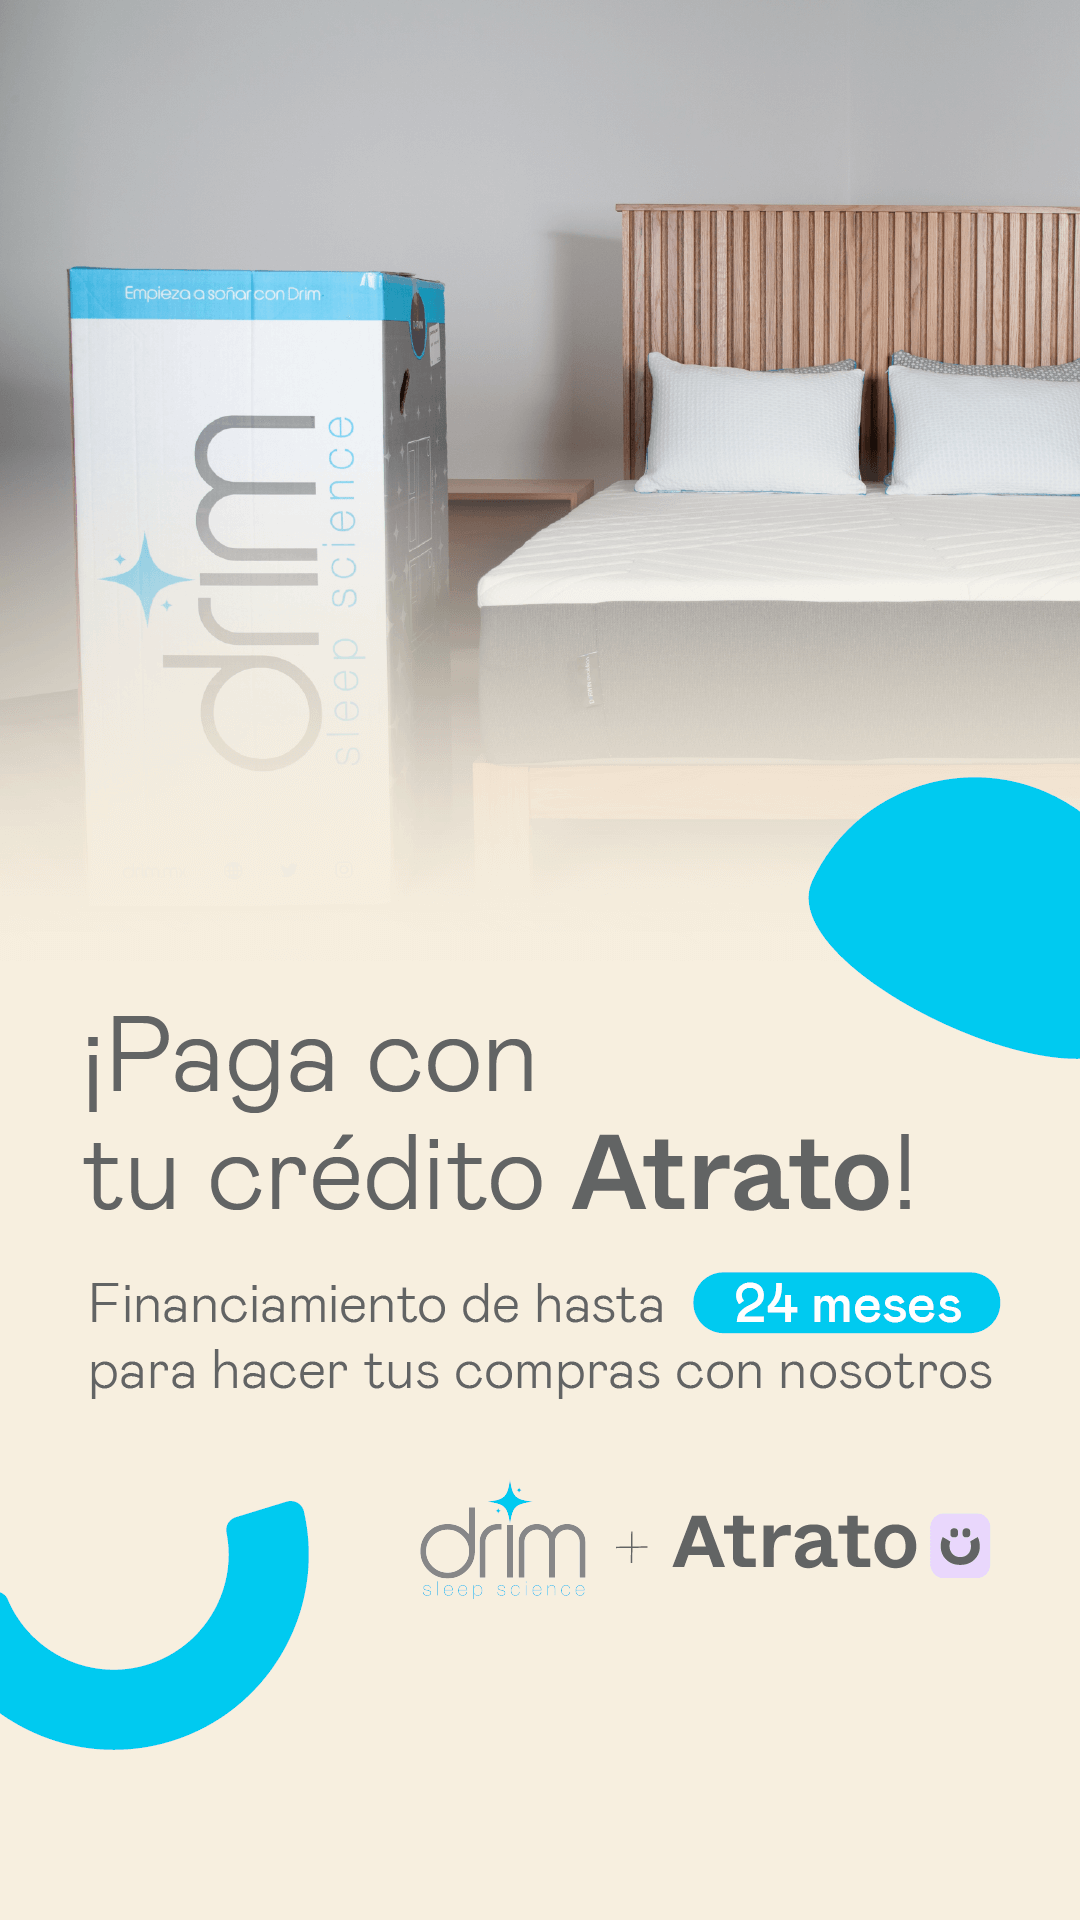 Paga con Atrato en drim.mx